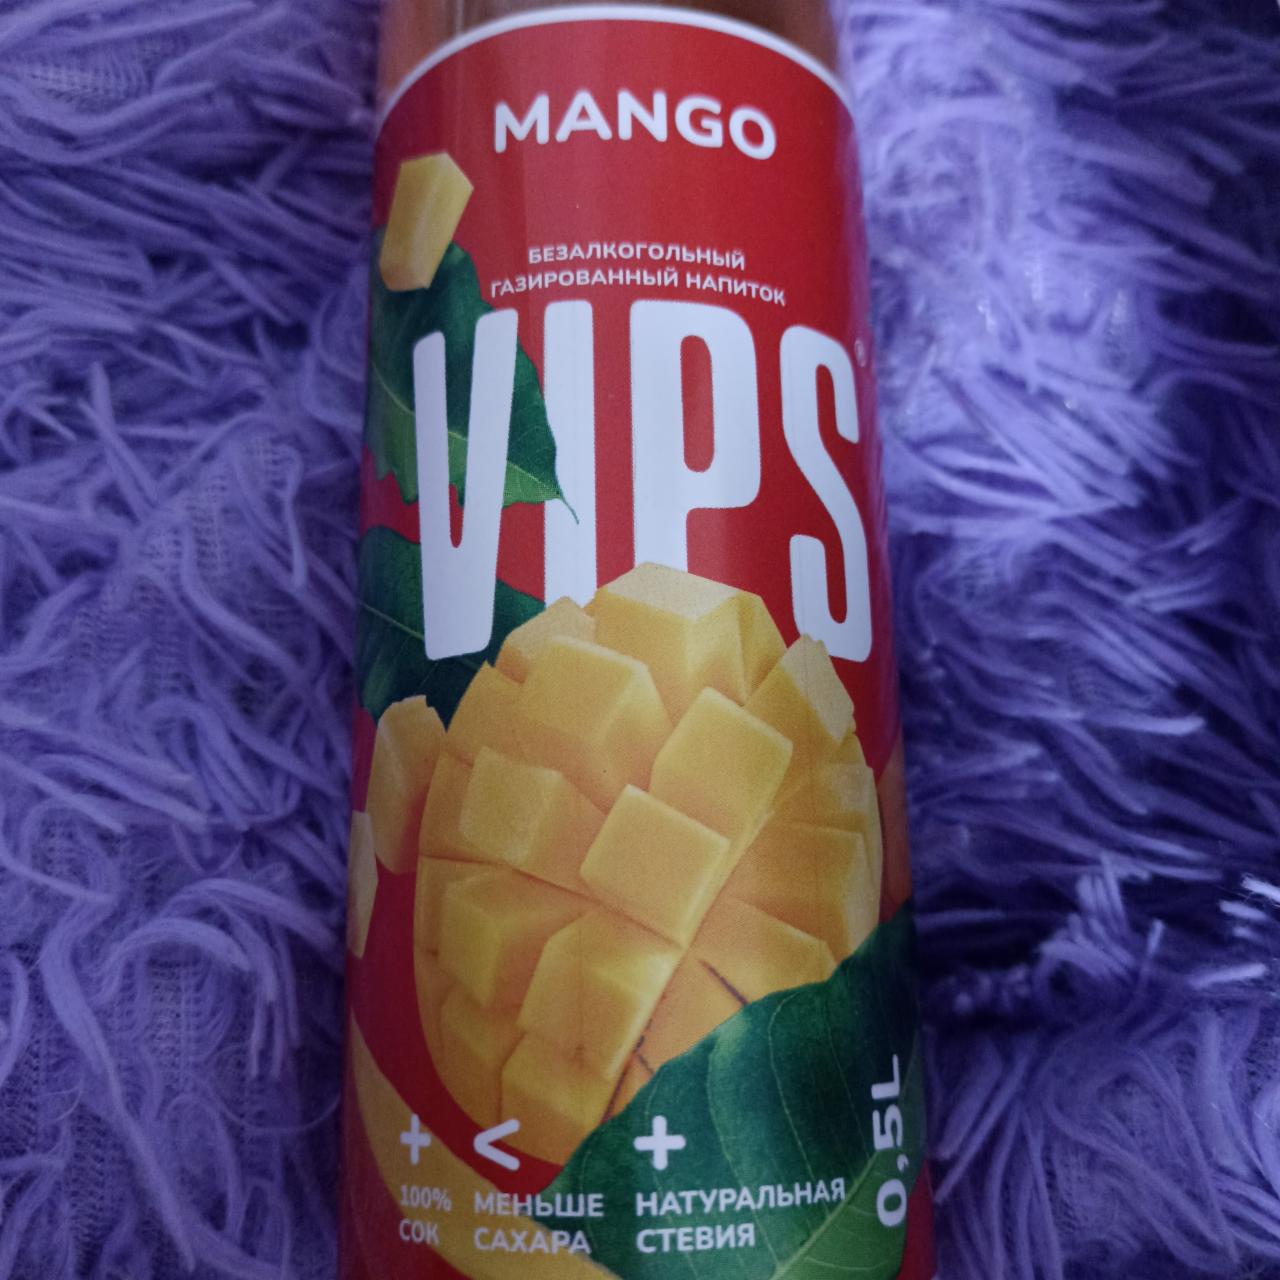 Фото - безалкогольный газированный напиток mango Vips